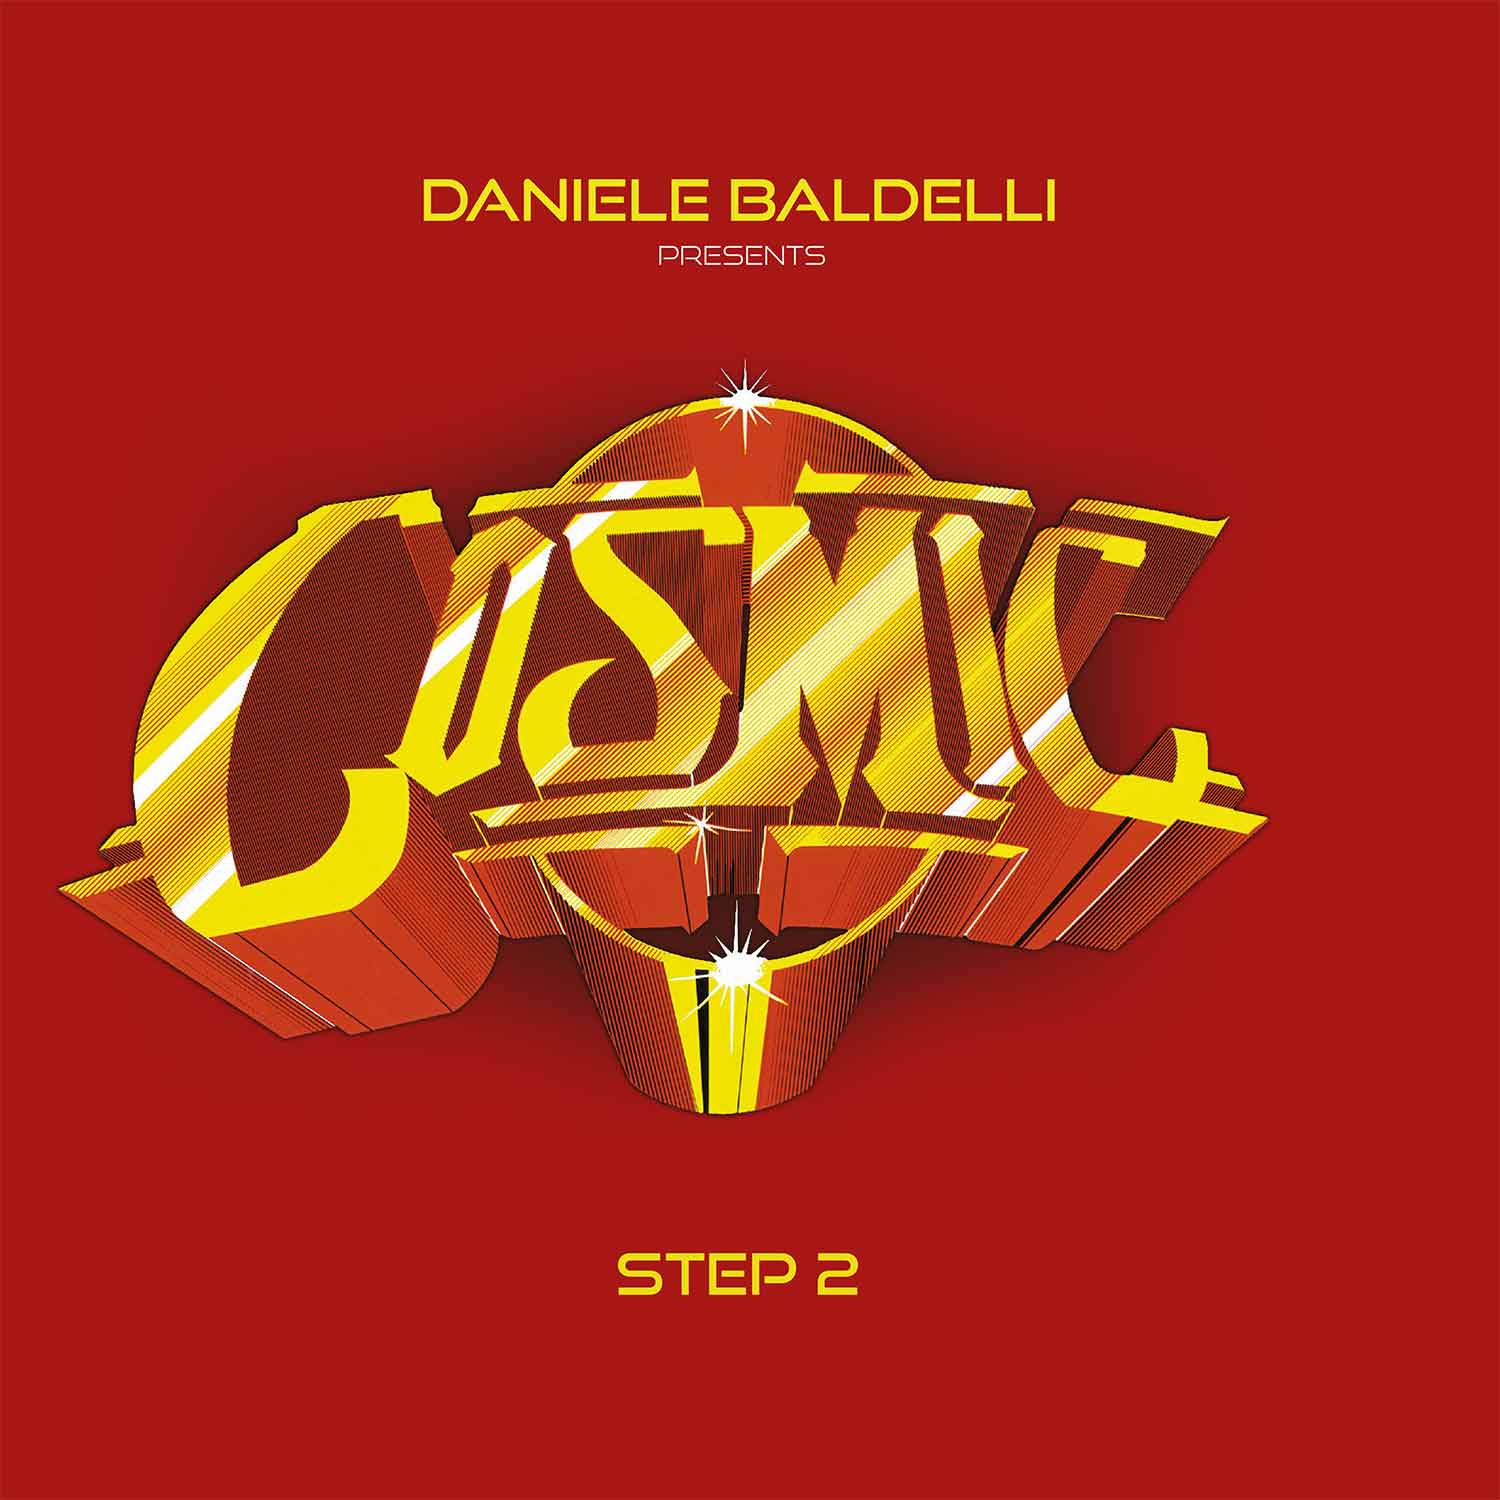 Vinile Daniele Baldelli - Cosmic Step 2 - Vinile Rosso (2 Lp) NUOVO SIGILLATO, EDIZIONE DEL 24/02/2023 SUBITO DISPONIBILE